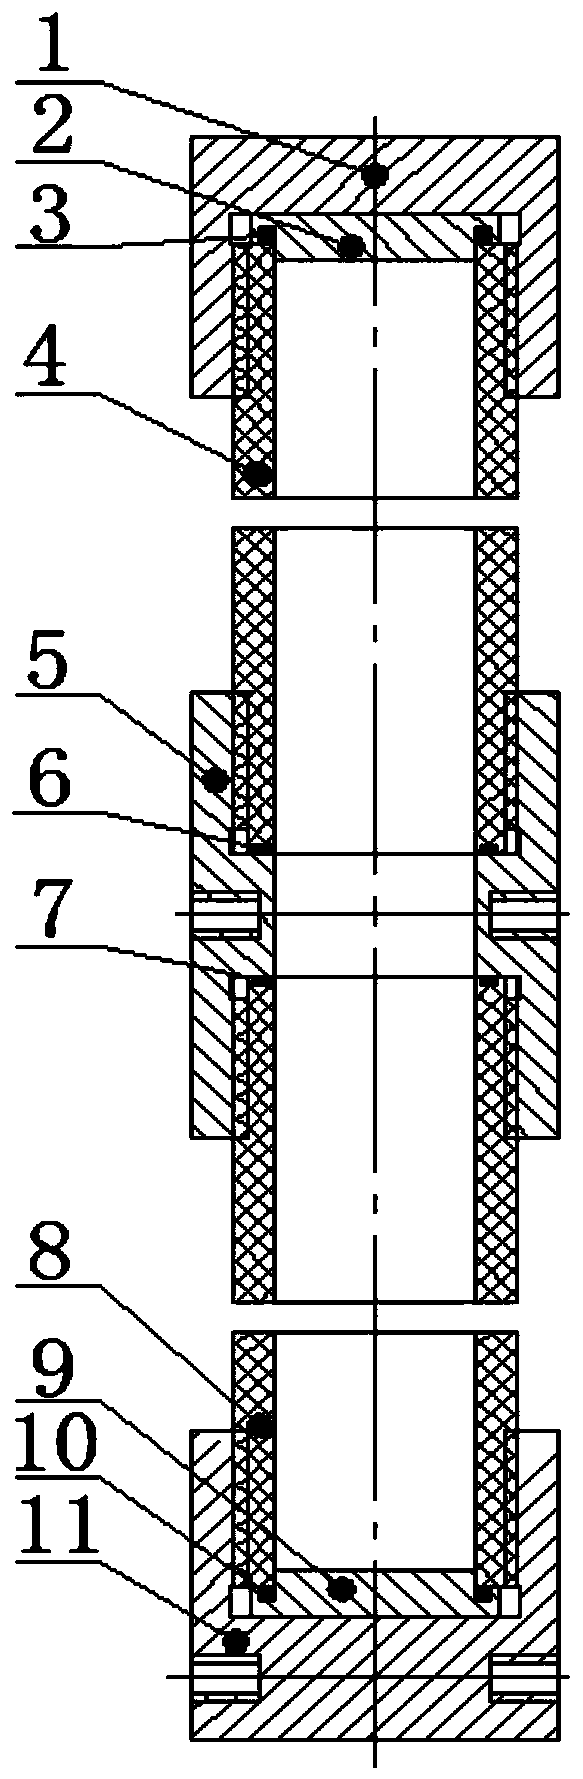 Gas-storage water resistor used in vertical state